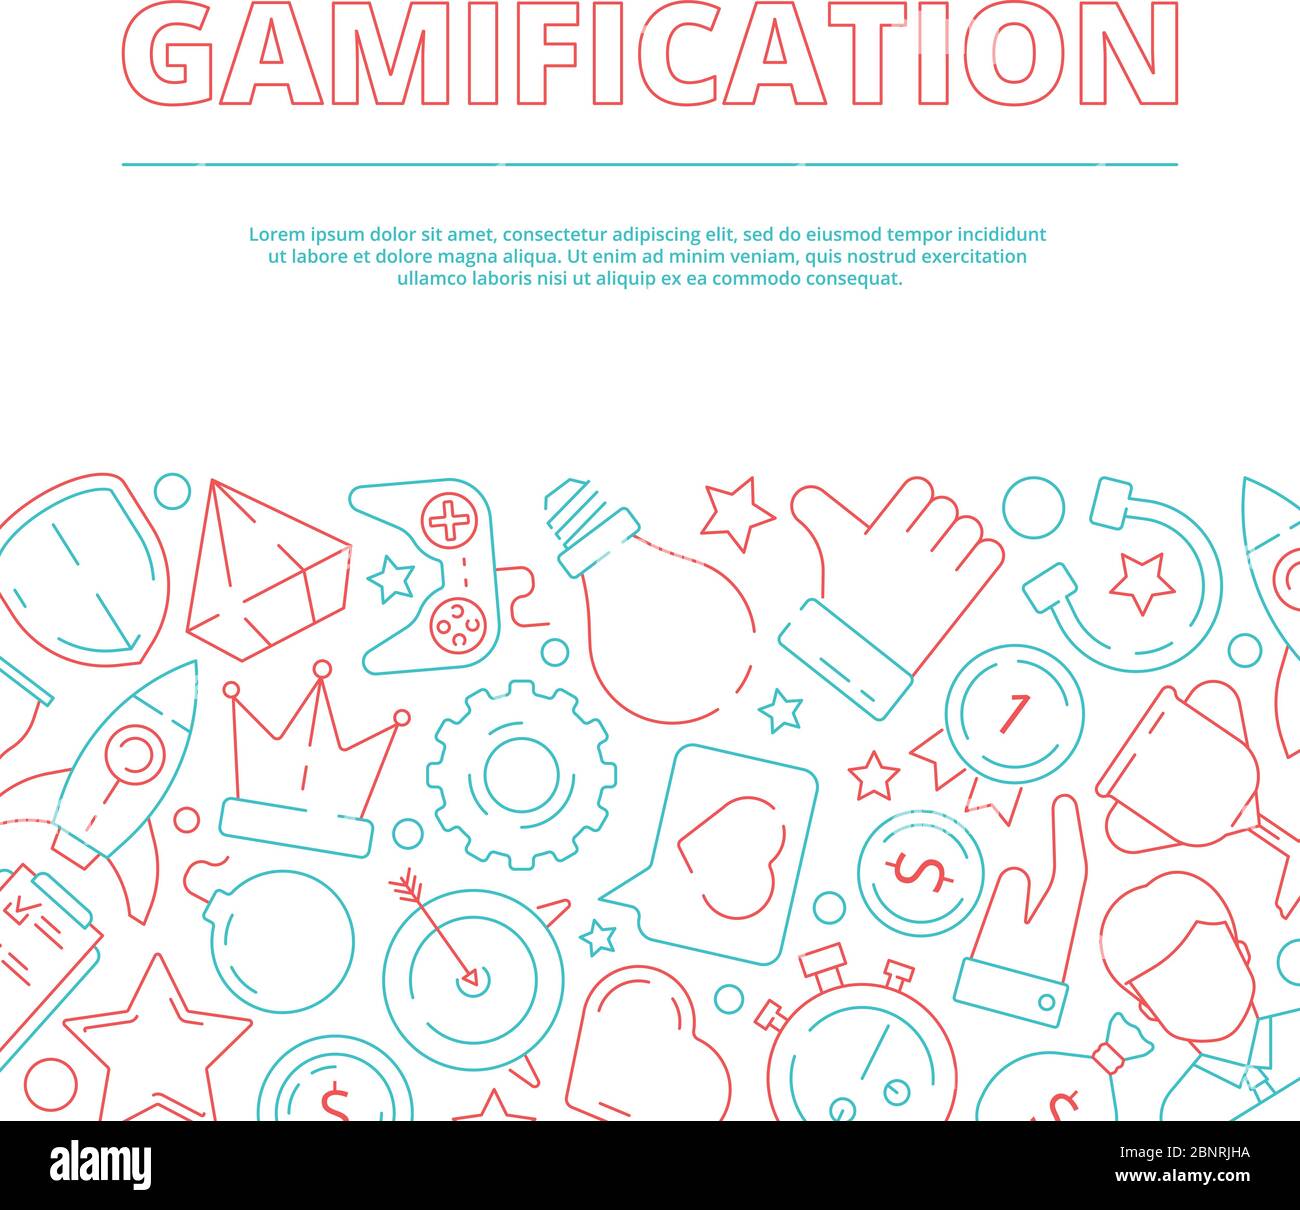 Fond de gamification. Règles métier pour les travailleurs réalisation jeu travail motivation vecteur image concept Illustration de Vecteur